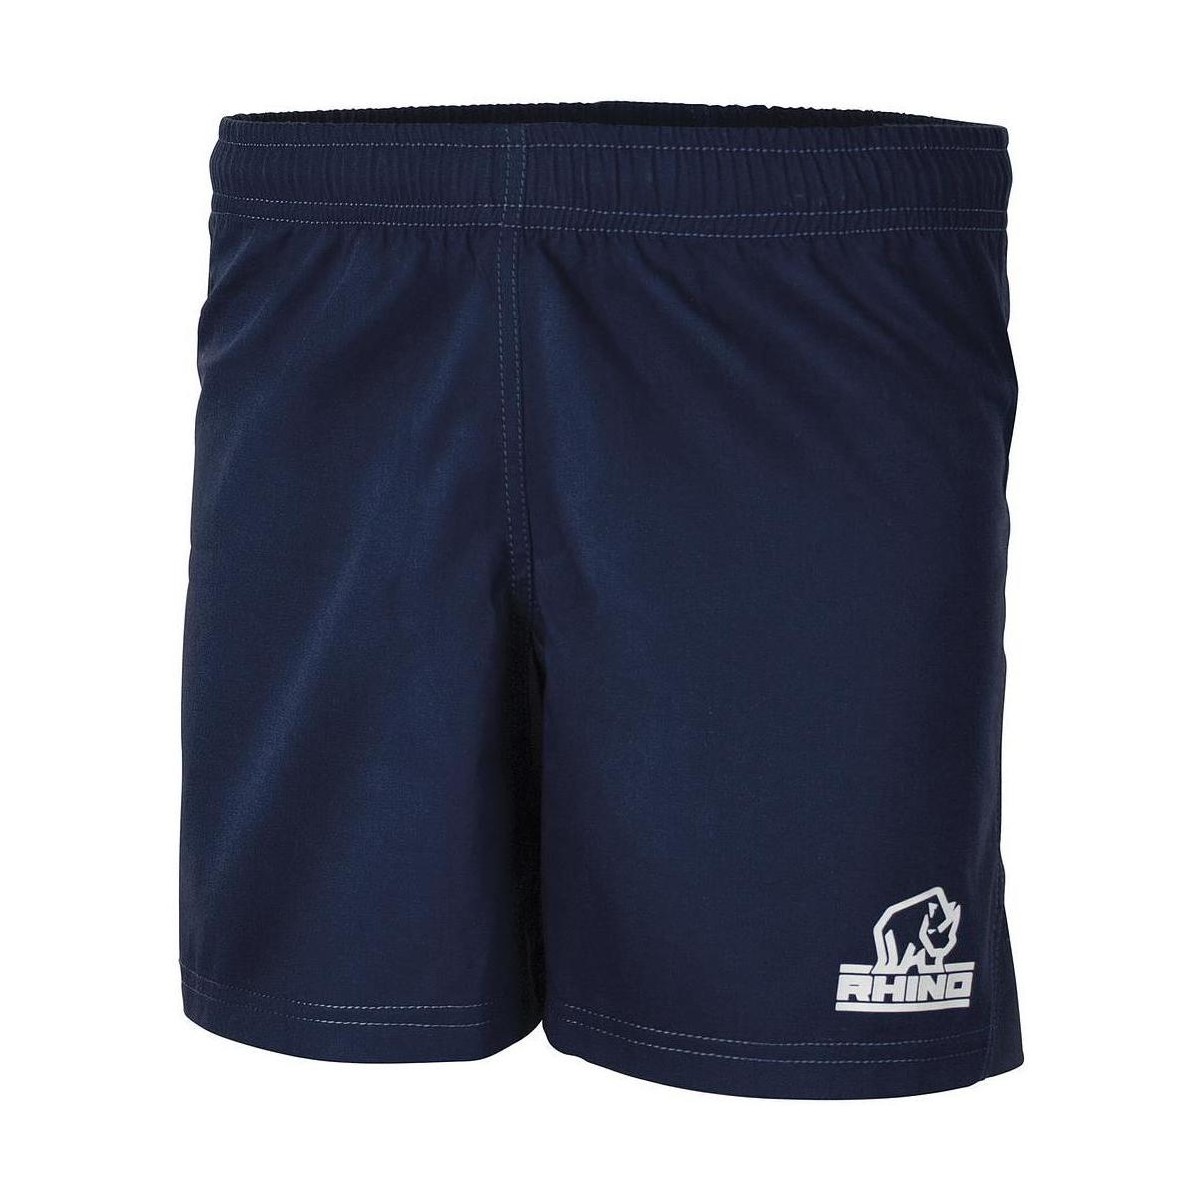 textil Shorts / Bermudas Rhino Auckland Azul